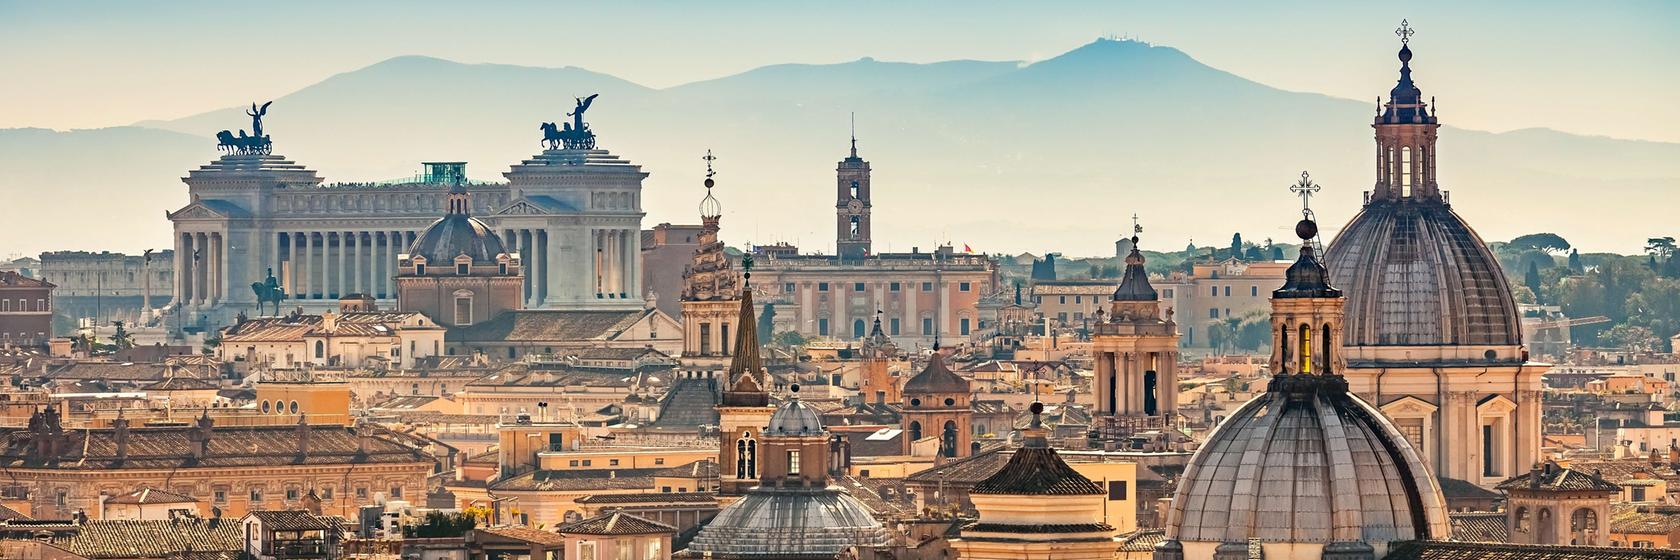 Náboženství, historie a kultura v Římě a okolí